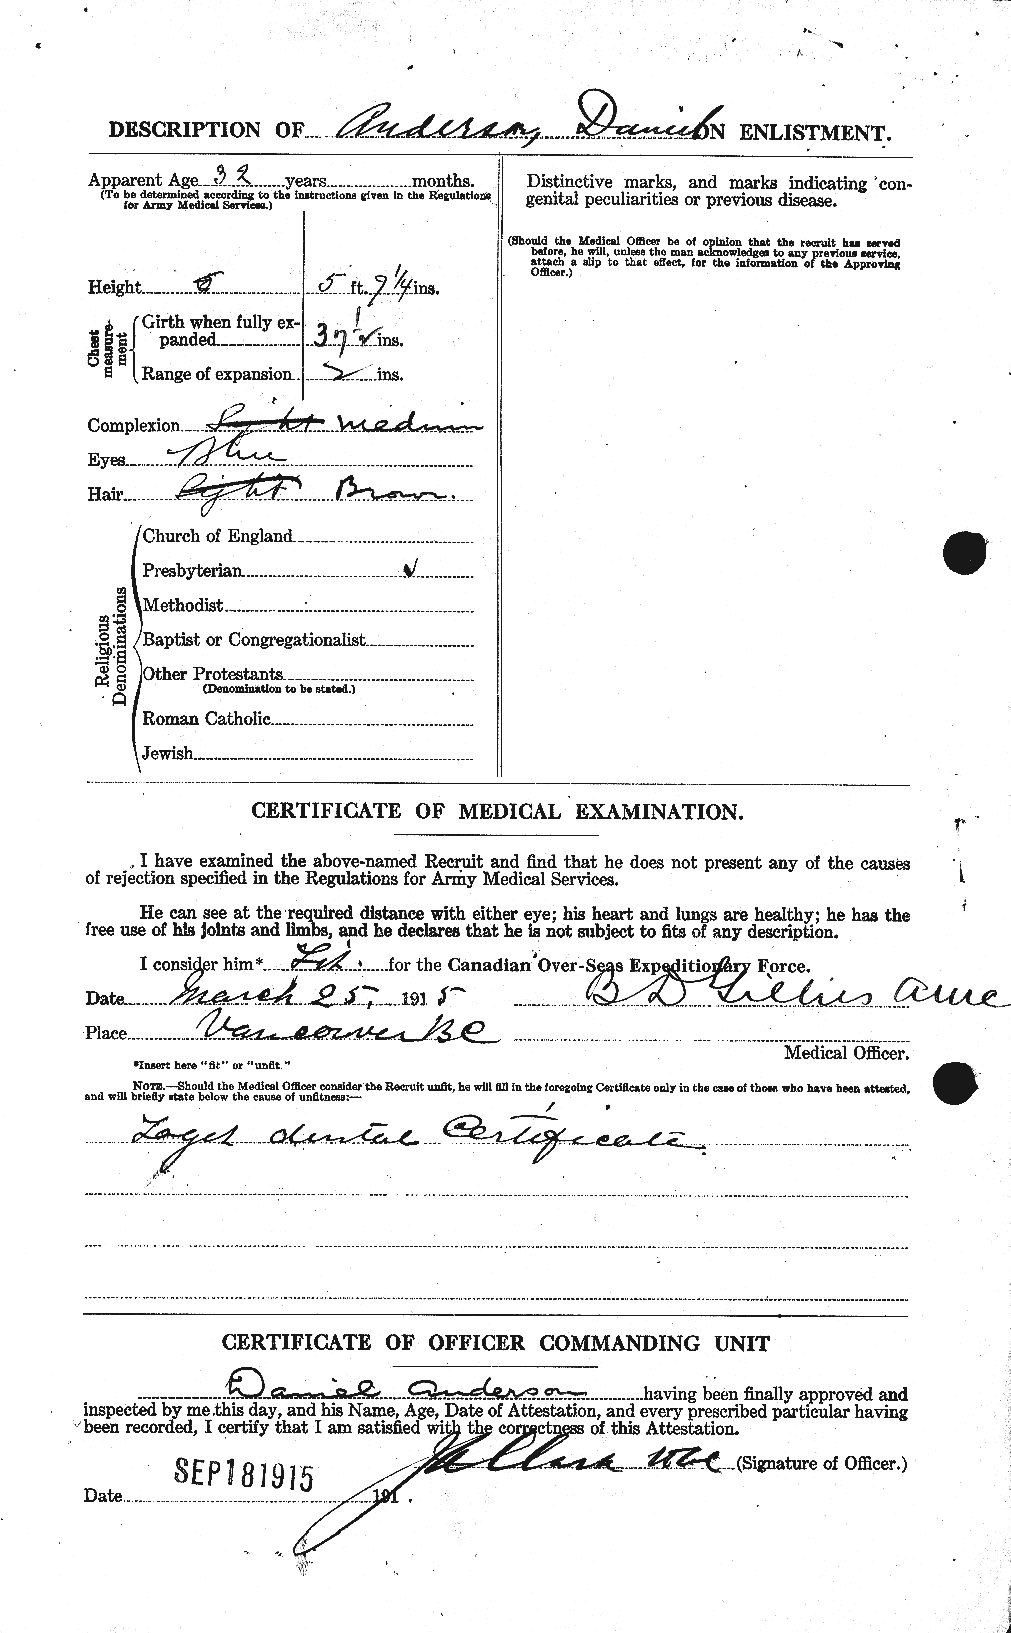 Dossiers du Personnel de la Première Guerre mondiale - CEC 210043b